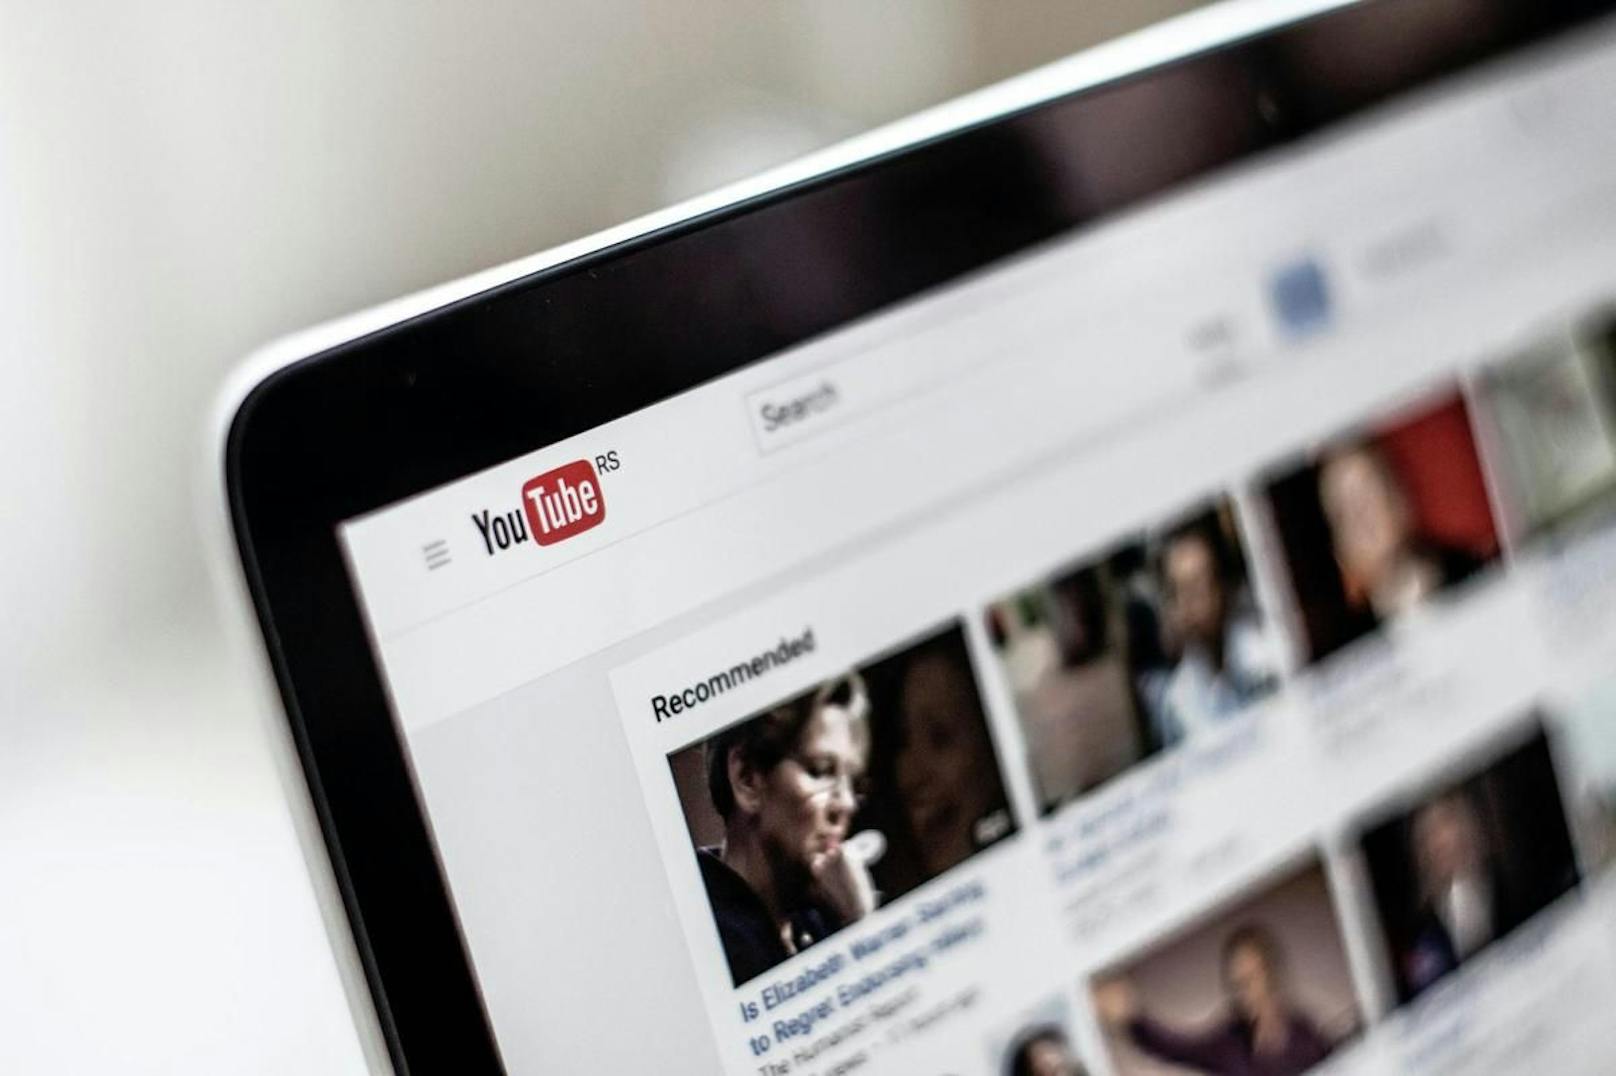 "Werbekunden wollen ihre Werbung einfach nicht neben solchen Inhalten sehen", erklärte Google.